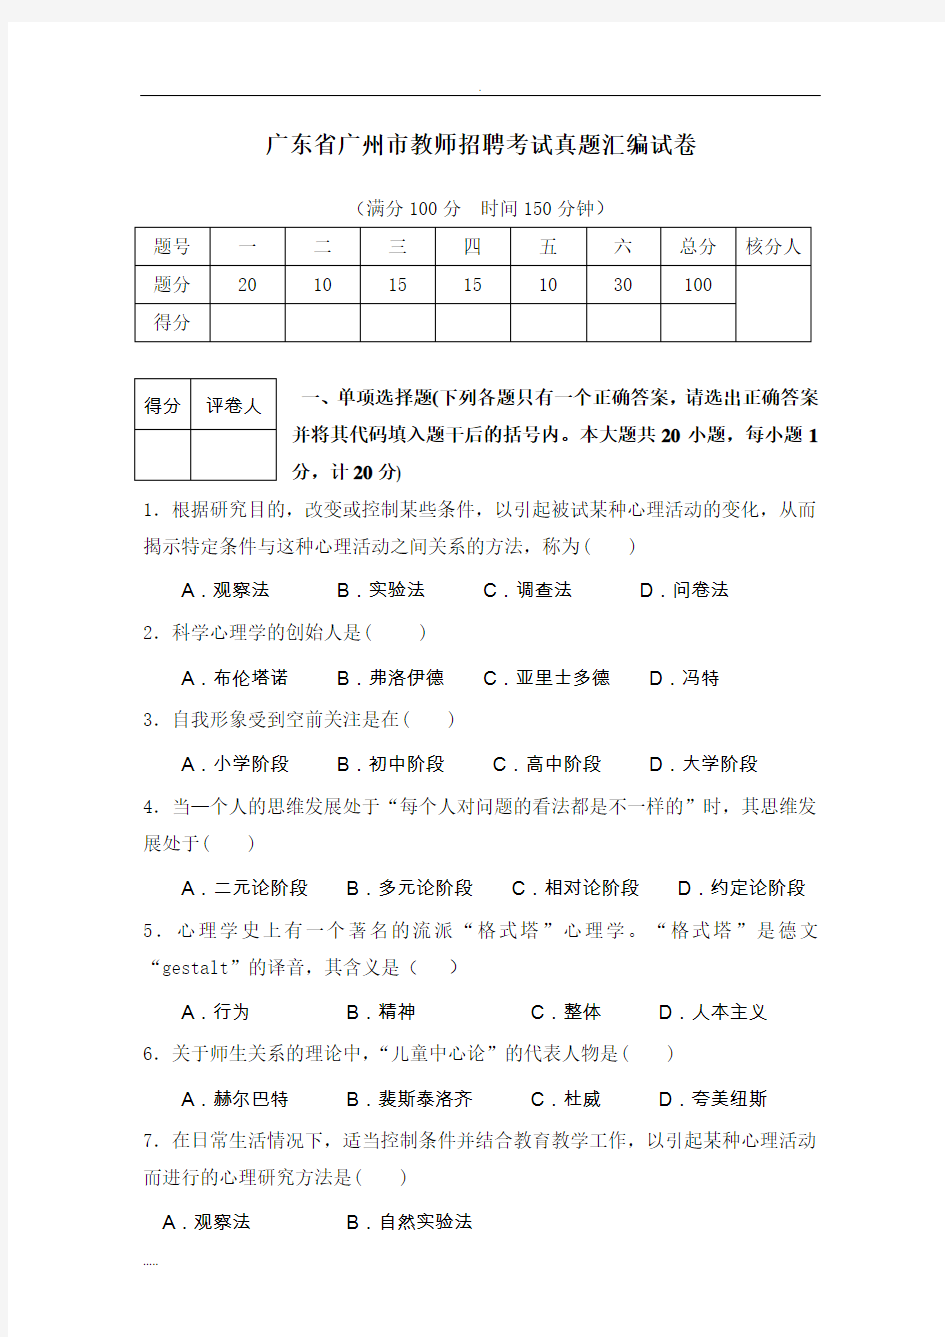 广州市教师招聘考试-真题汇集(含答案)